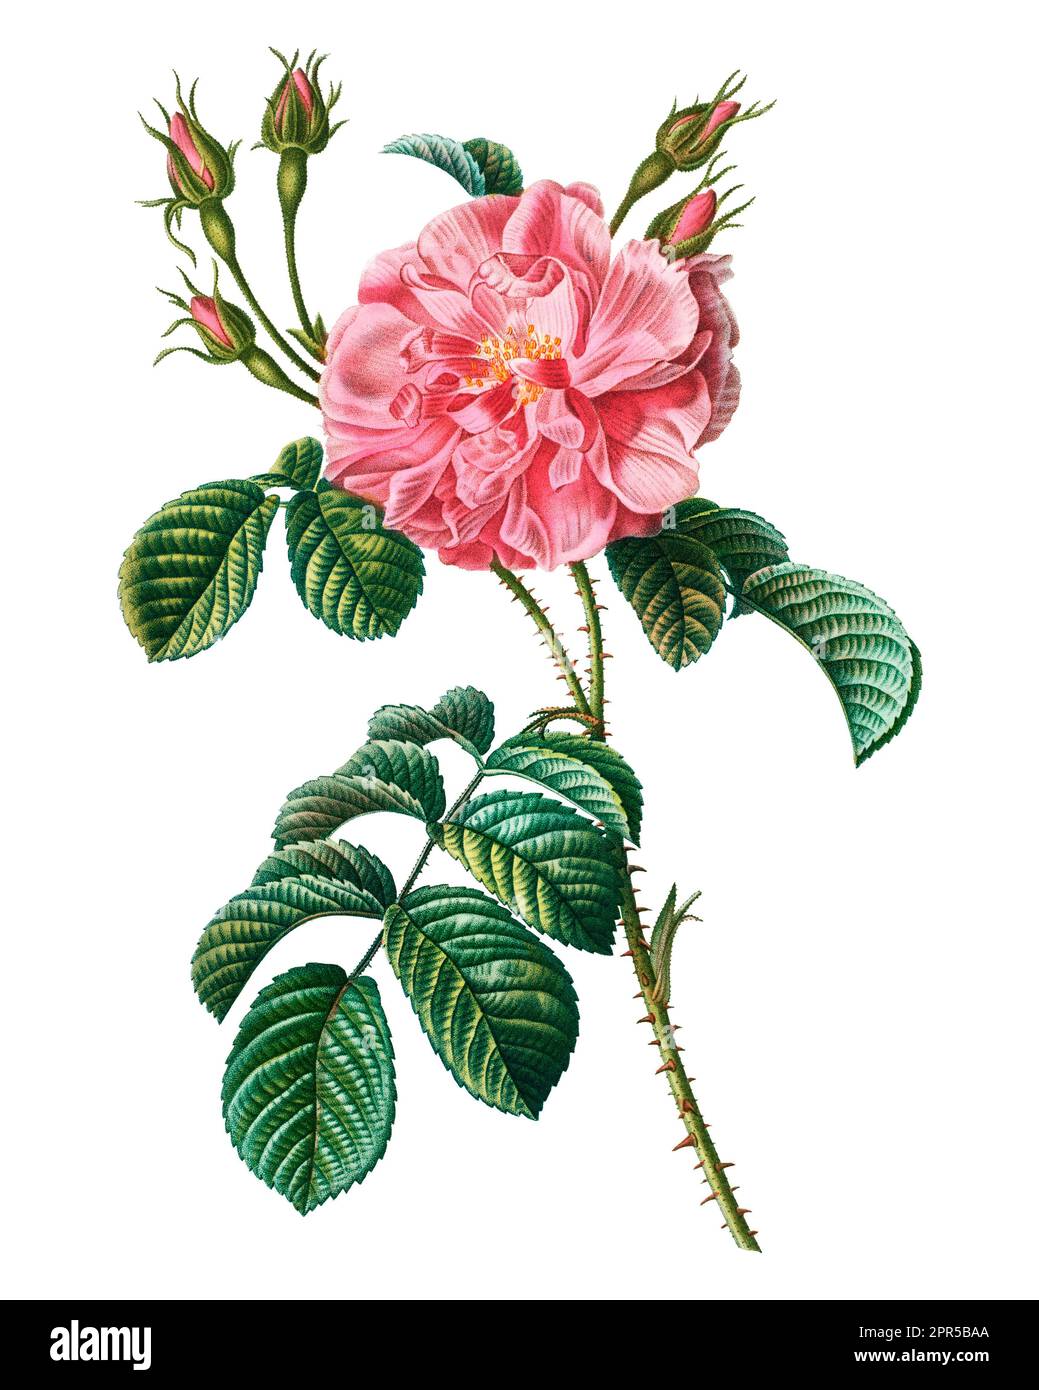 Eine leuchtend rosa Rose, die auf einem üppigen grünen Stamm und Laub blüht, mit einer exquisit rot-kehlenden Blume Stockfoto